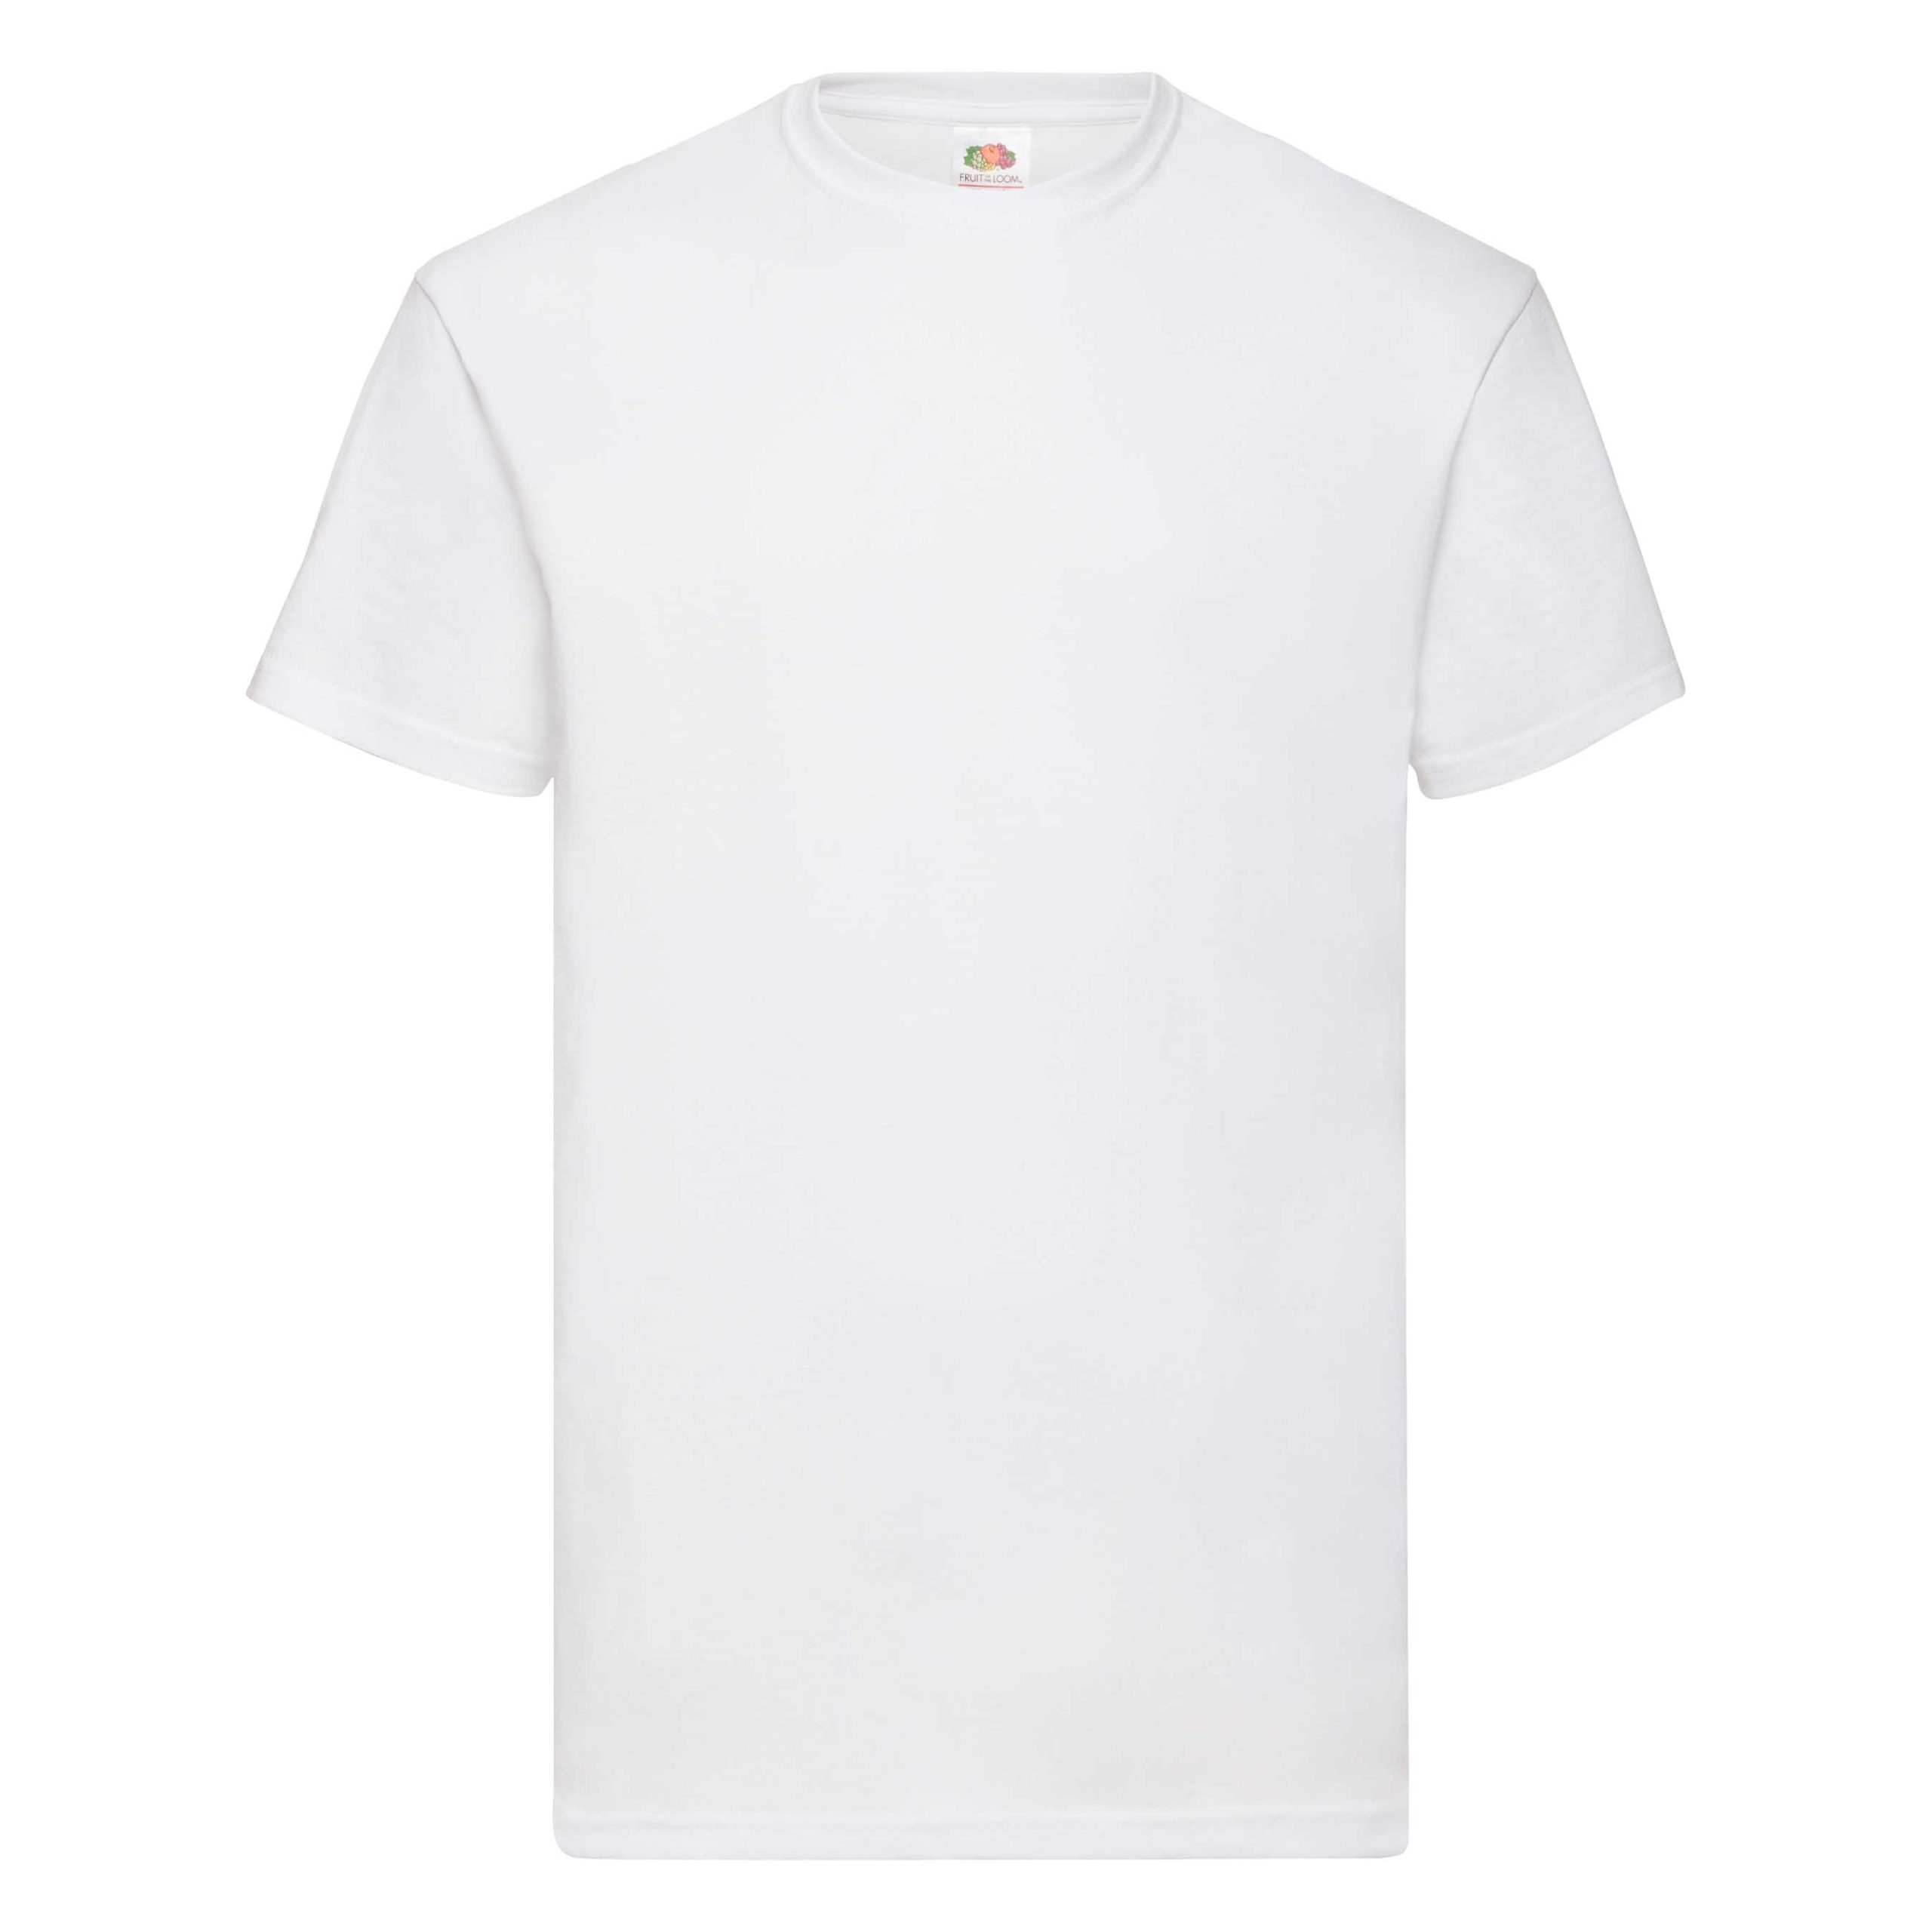 Weißes Männer T Shirt GM Druck Shop